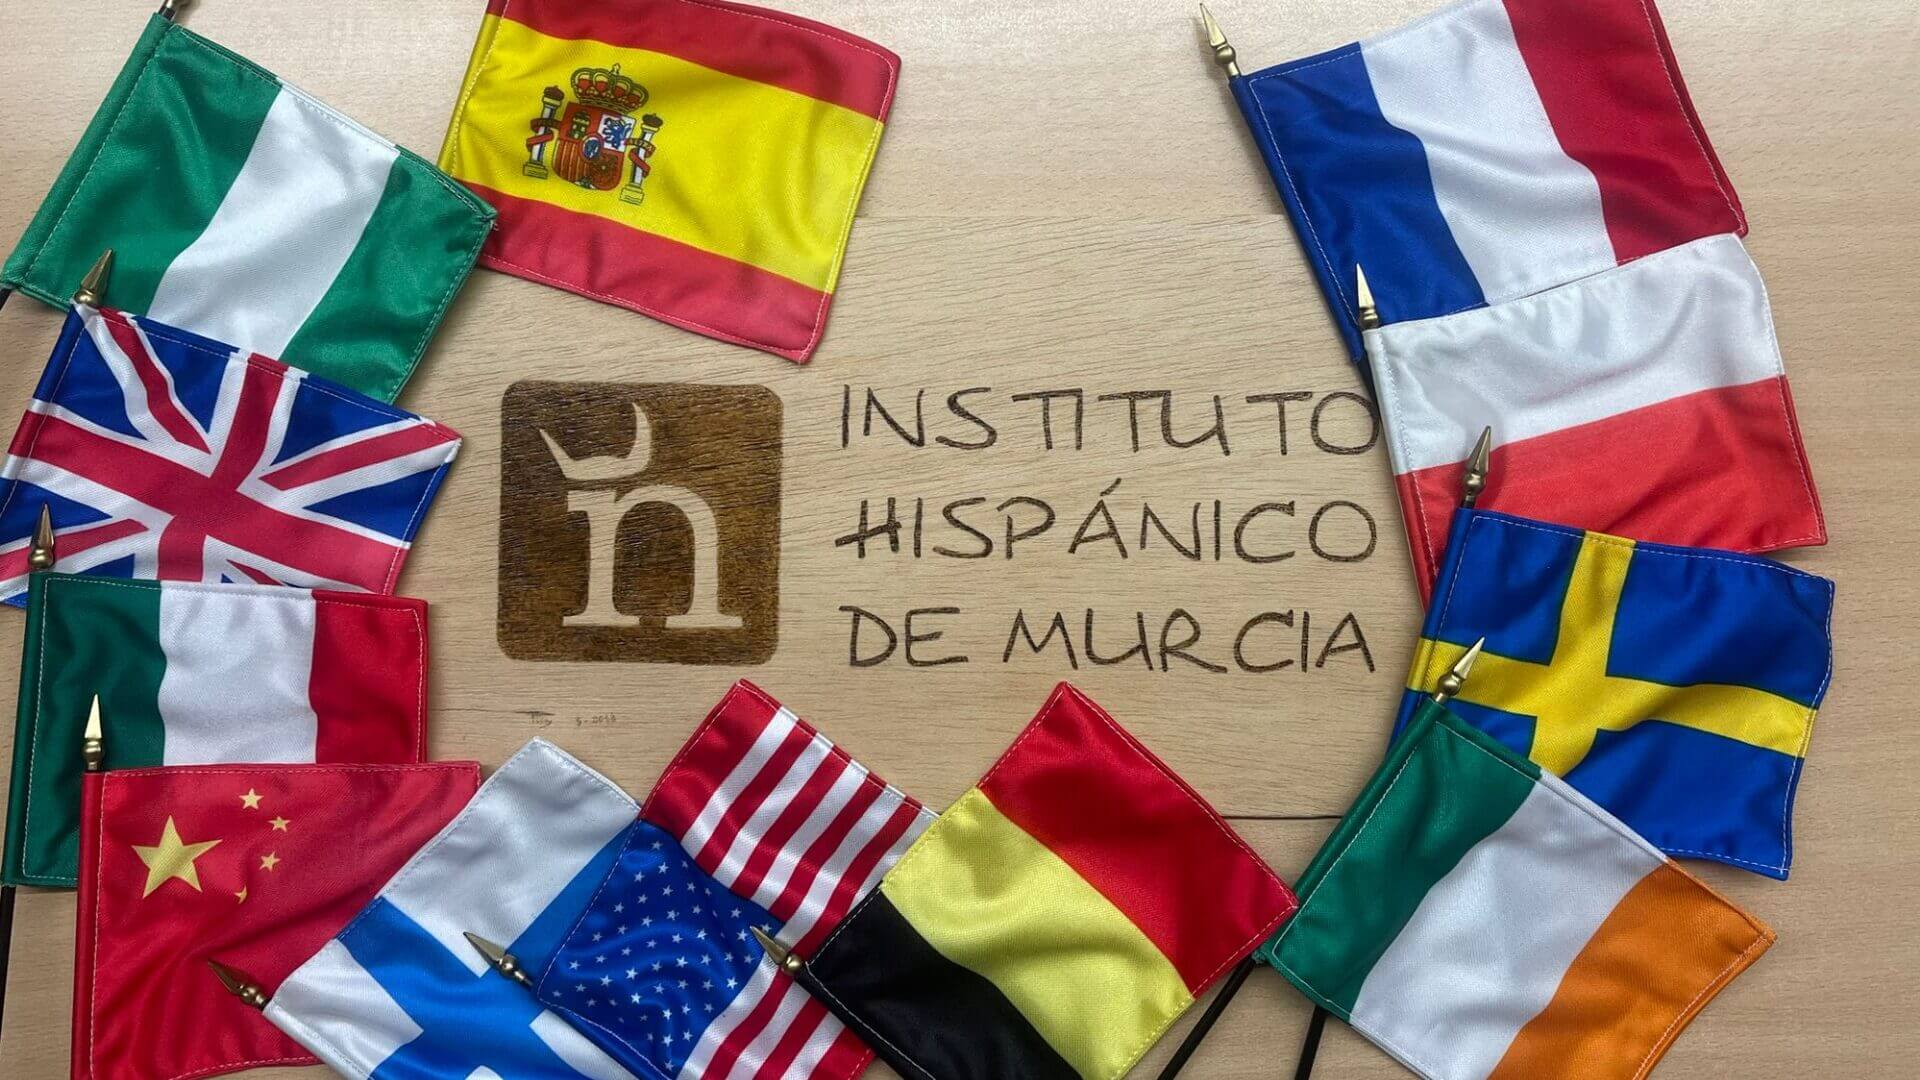 Instituto Hispánico de Murcia - NIE und Nationalität: Ein kompletter Leitfaden, um sie zu erhalten.